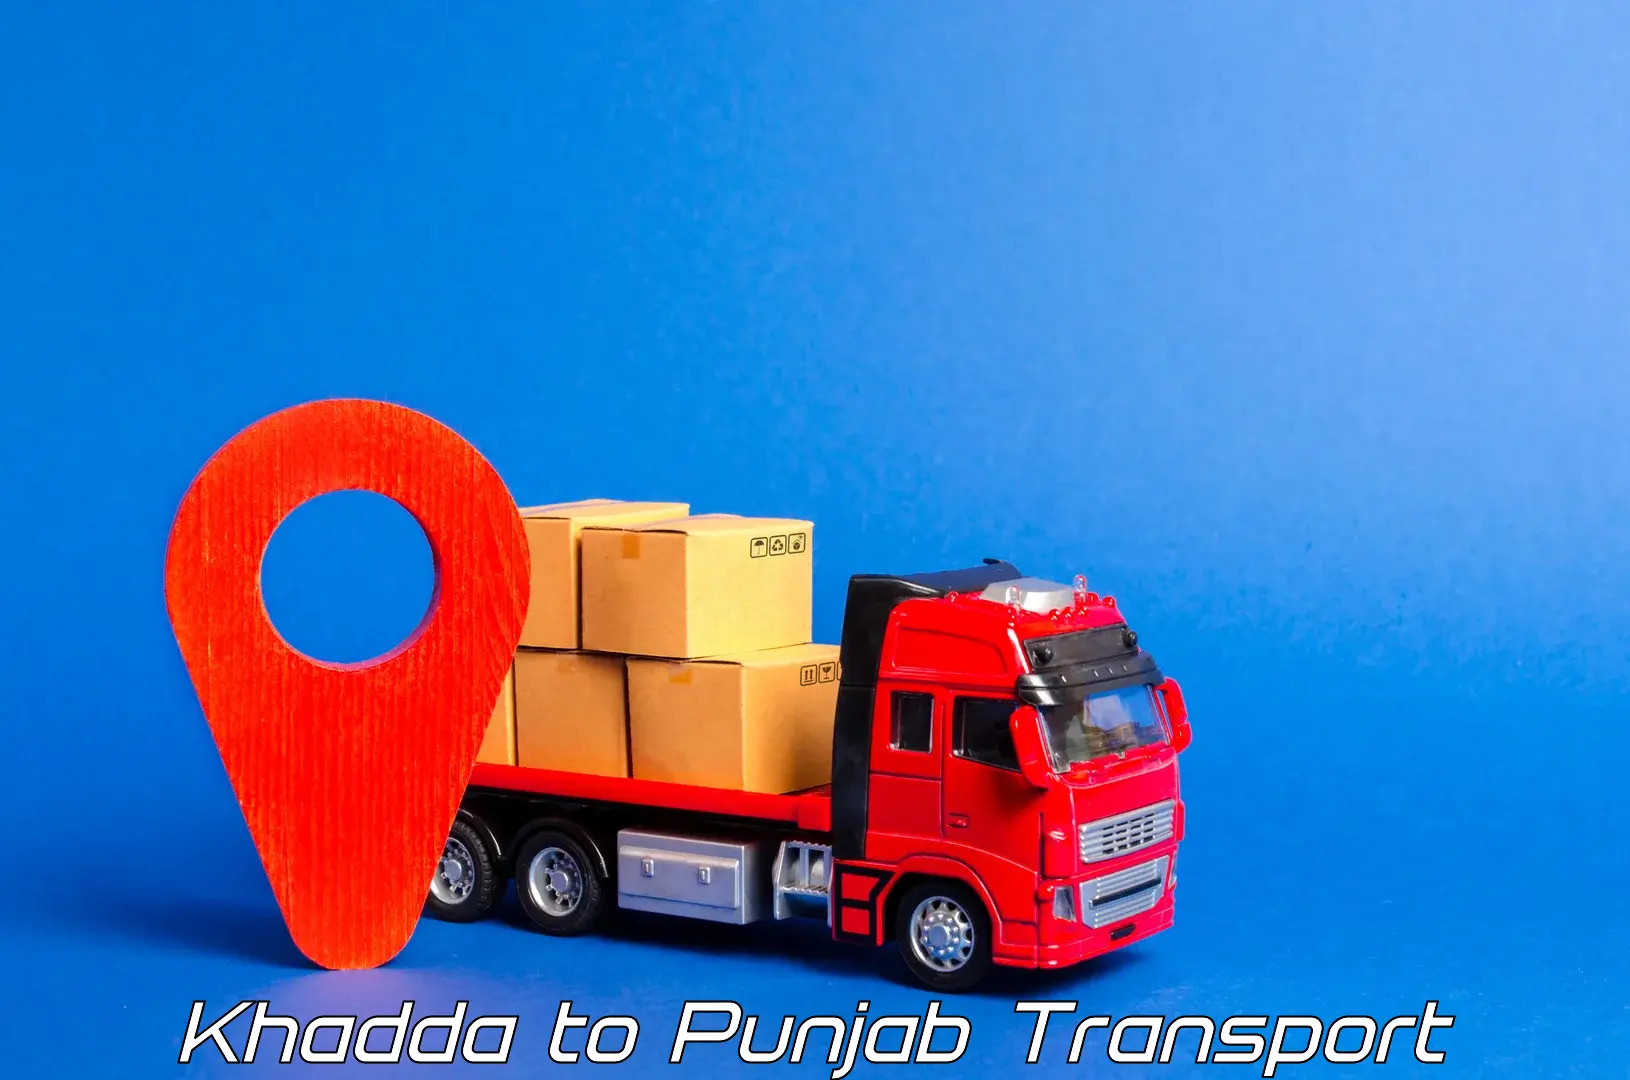 Road transport services Khadda to Raikot